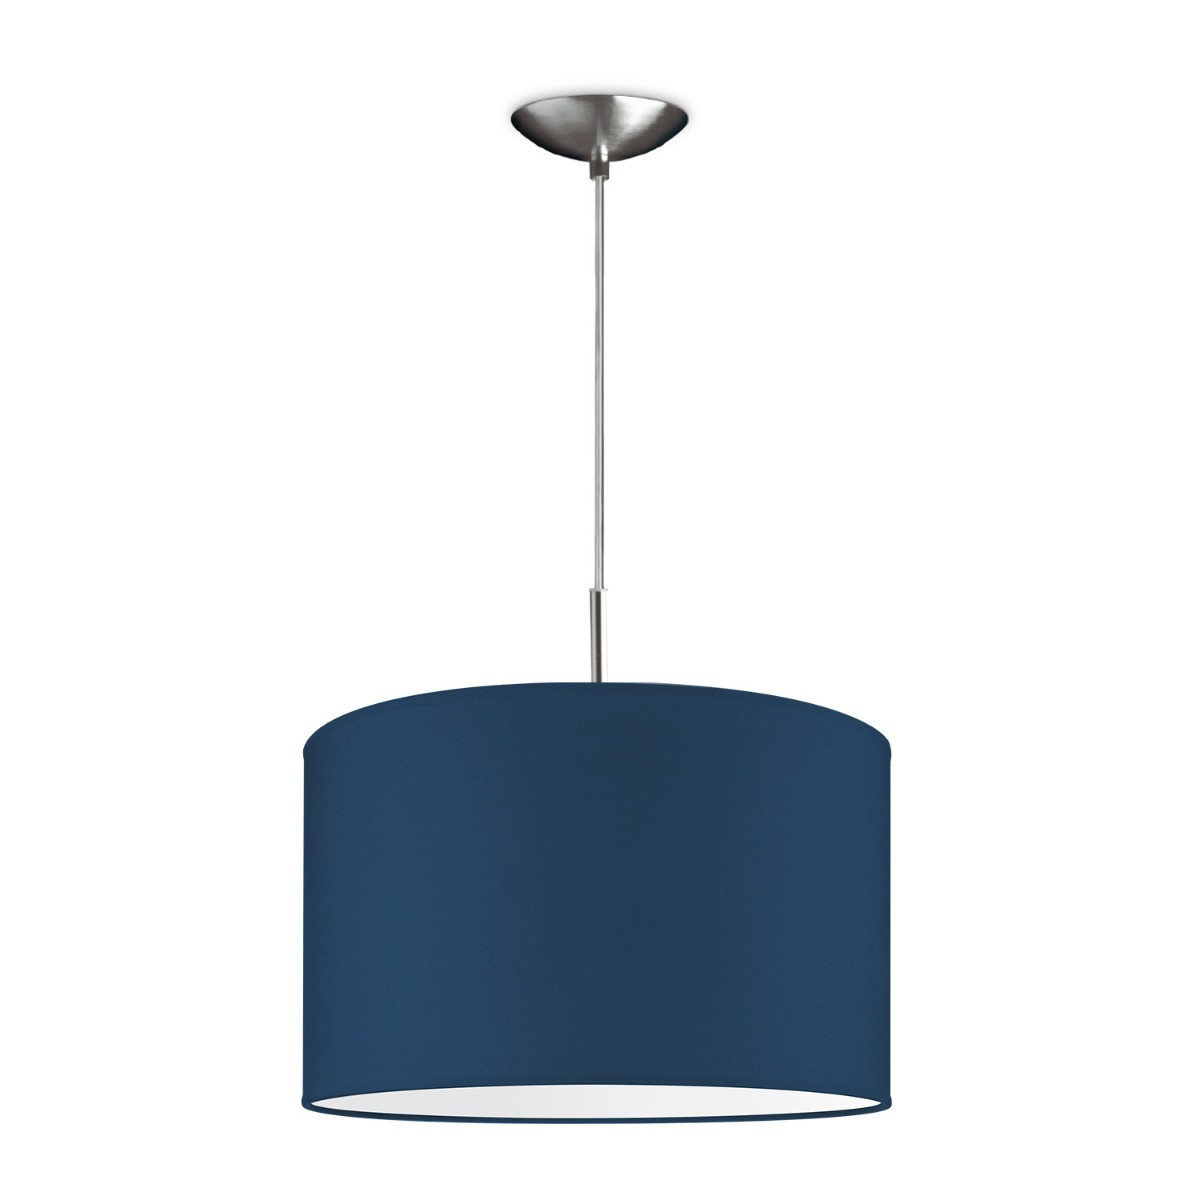 Light depot - hanglamp tube deluxe bling Ø 35 cm - blauw - Outlet